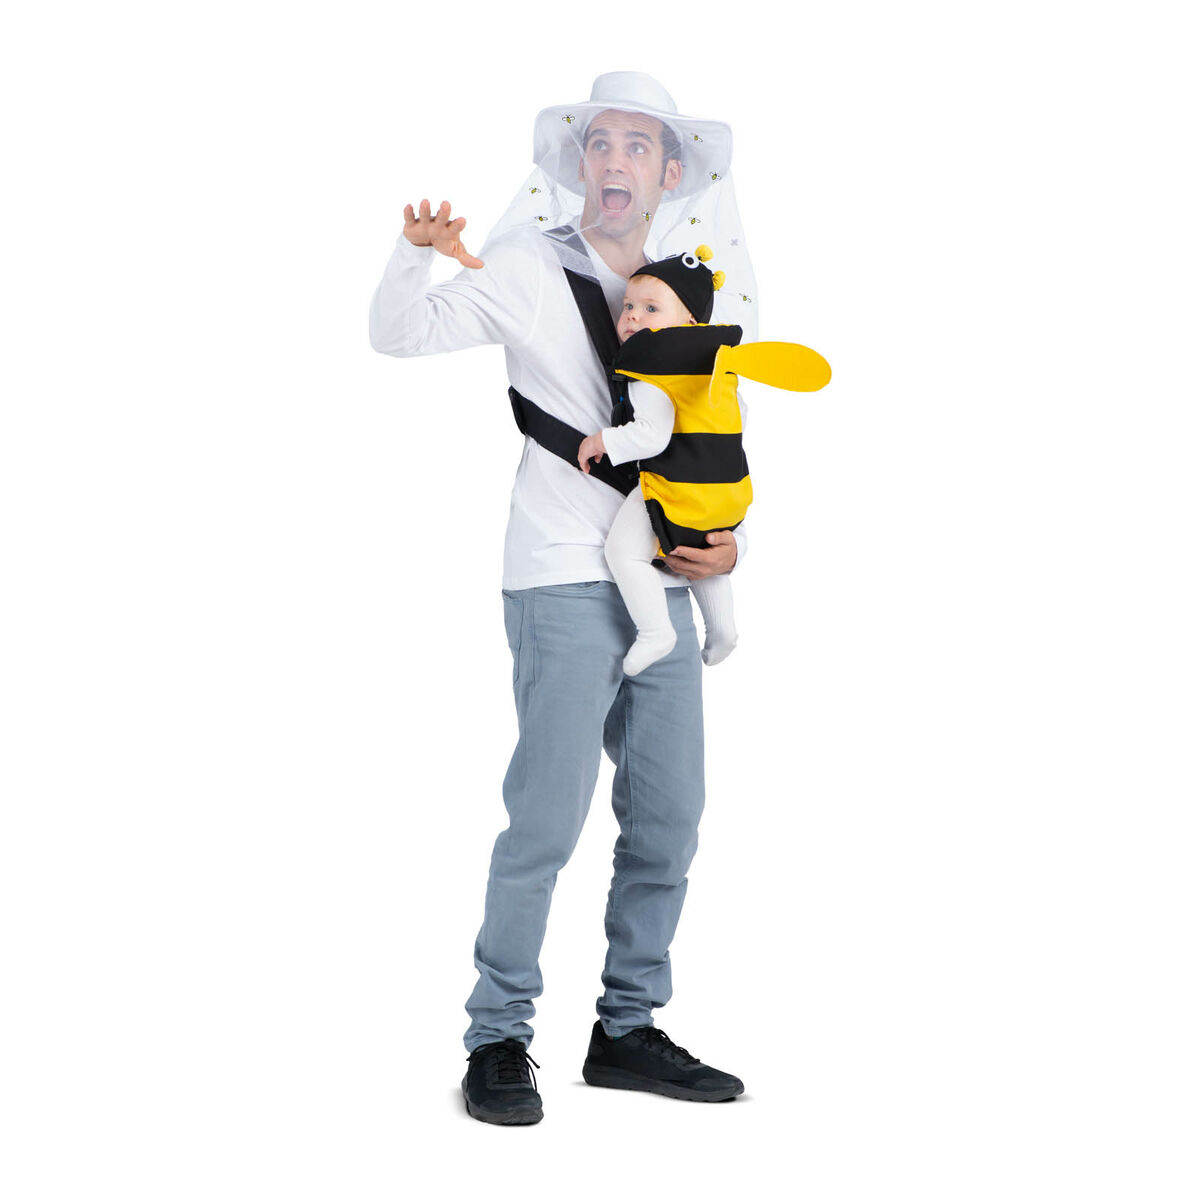 Disfraz de abeja color amarillo y negro para niños de 5 a 6 años